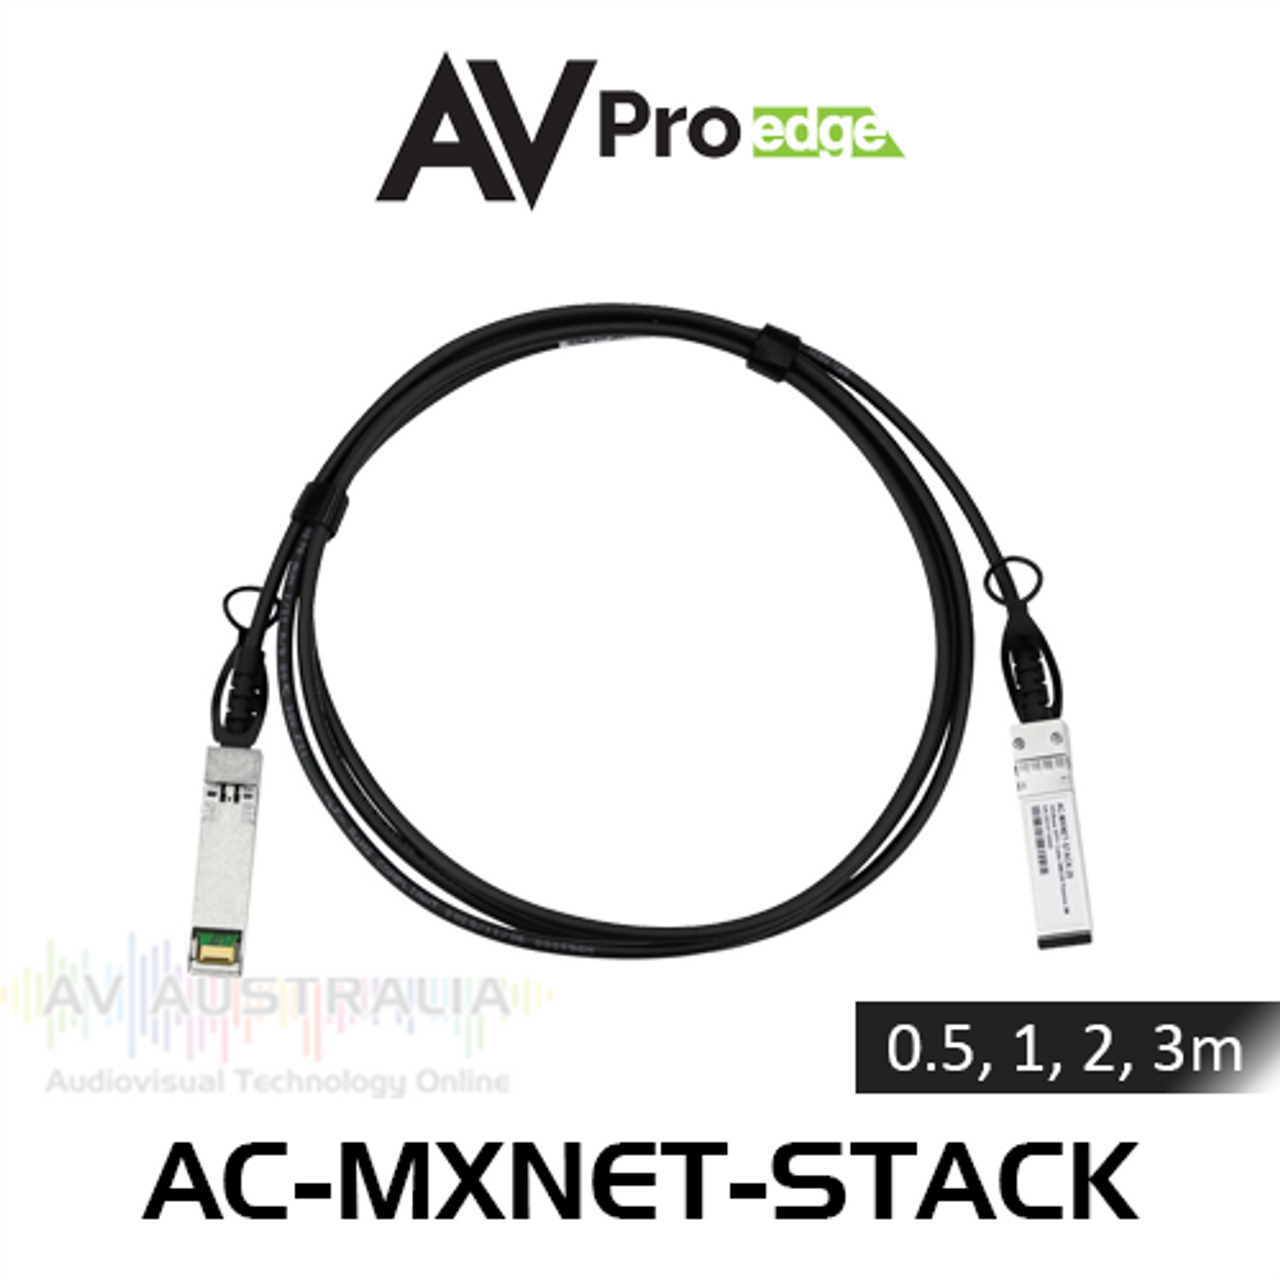 AVPro Edge MxNet Fiber Optic Link Cable For Network Switch (0.5, 1, 2, 3m)